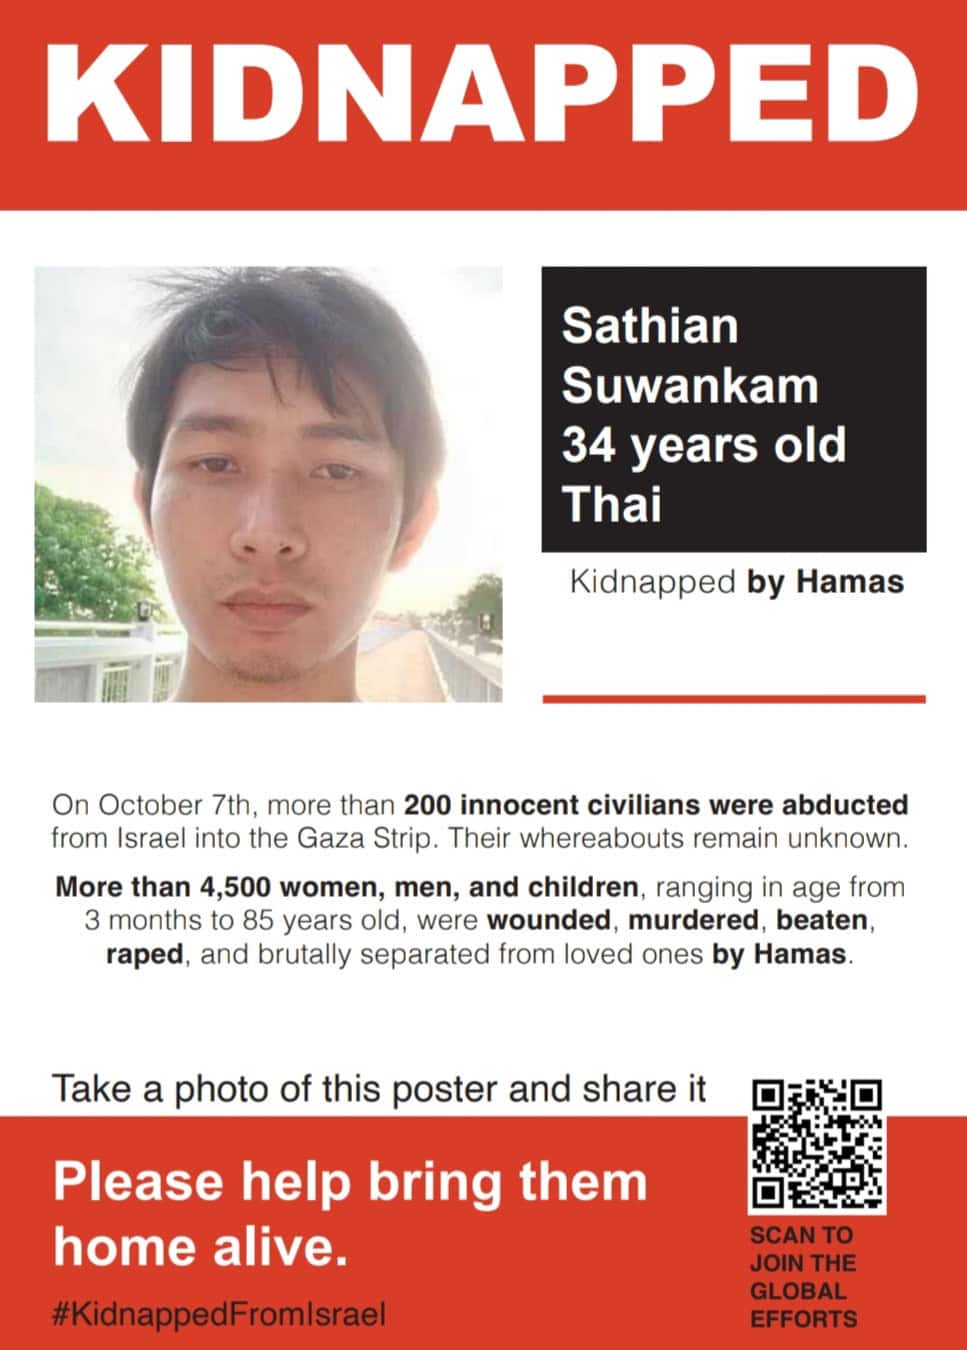 כרזה עם תמונתו של סאתיאן סואנקם, (Sathian Suwankam), אזרח תאילנד שנחטף לעזה